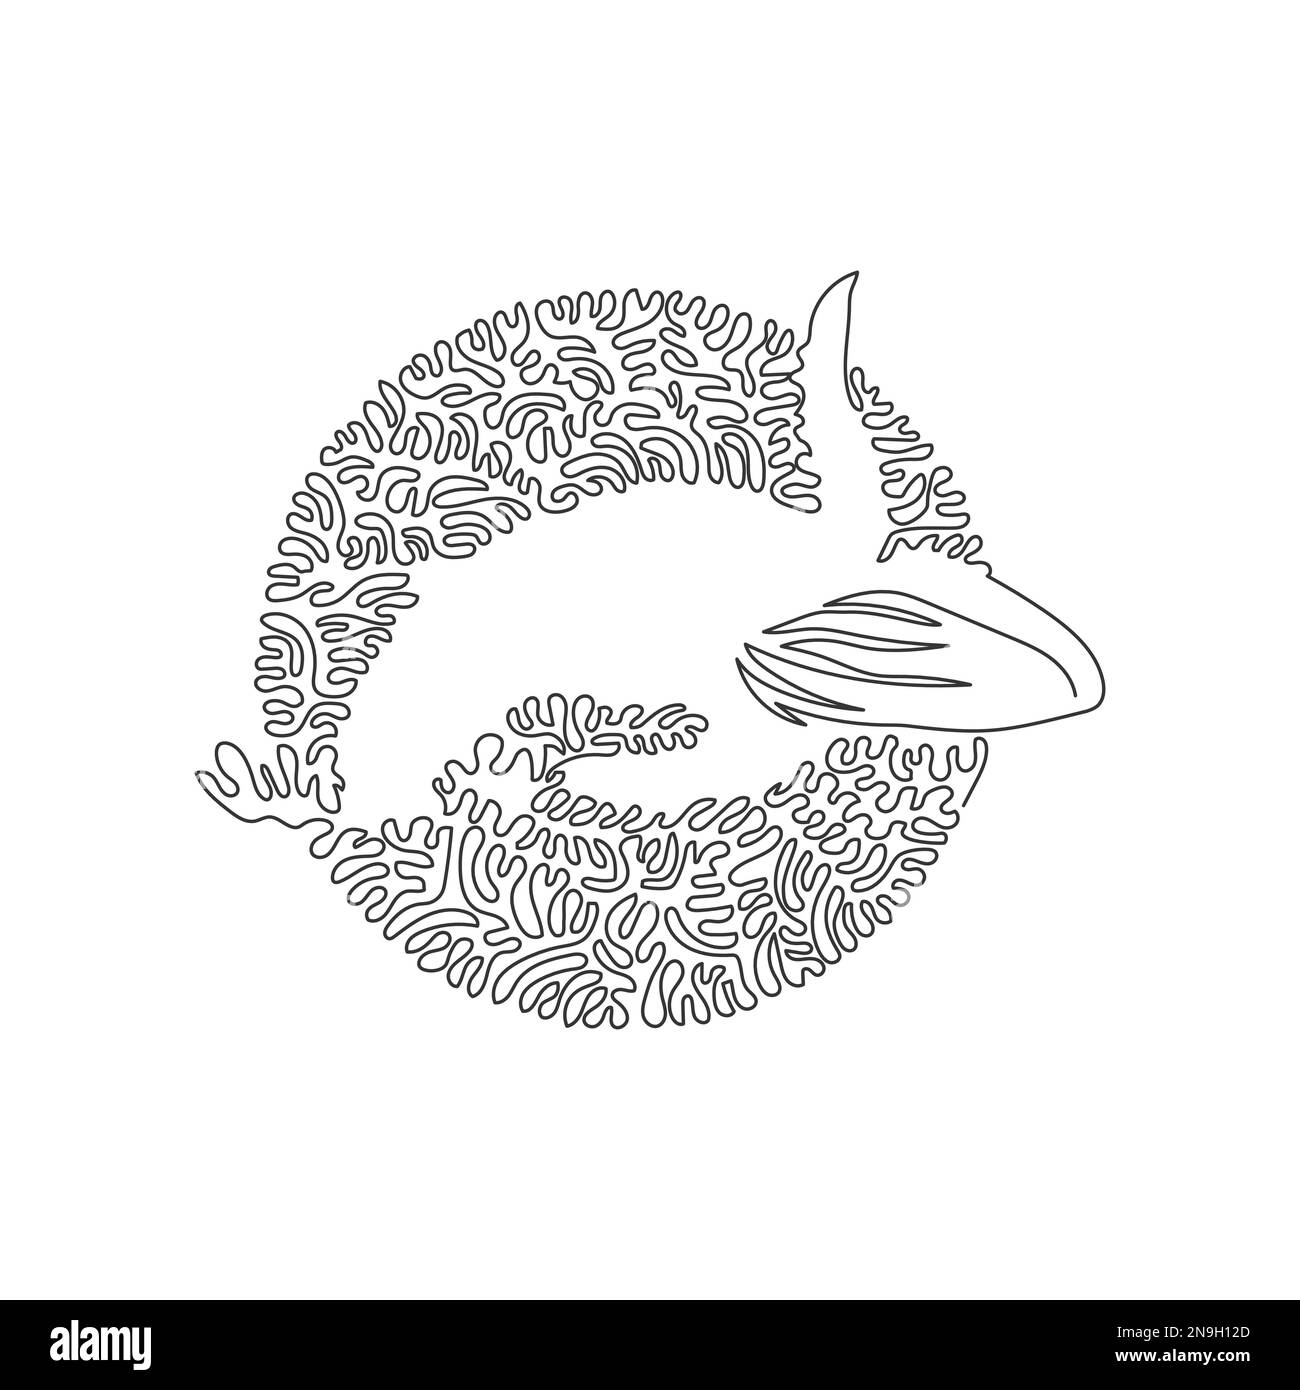 Dessin continu de lignes courbes de l'art abstrait de baleine effrayant dans un cercle. Illustration vectorielle d'un trait modifiable d'une baleine géante sous l'eau Illustration de Vecteur